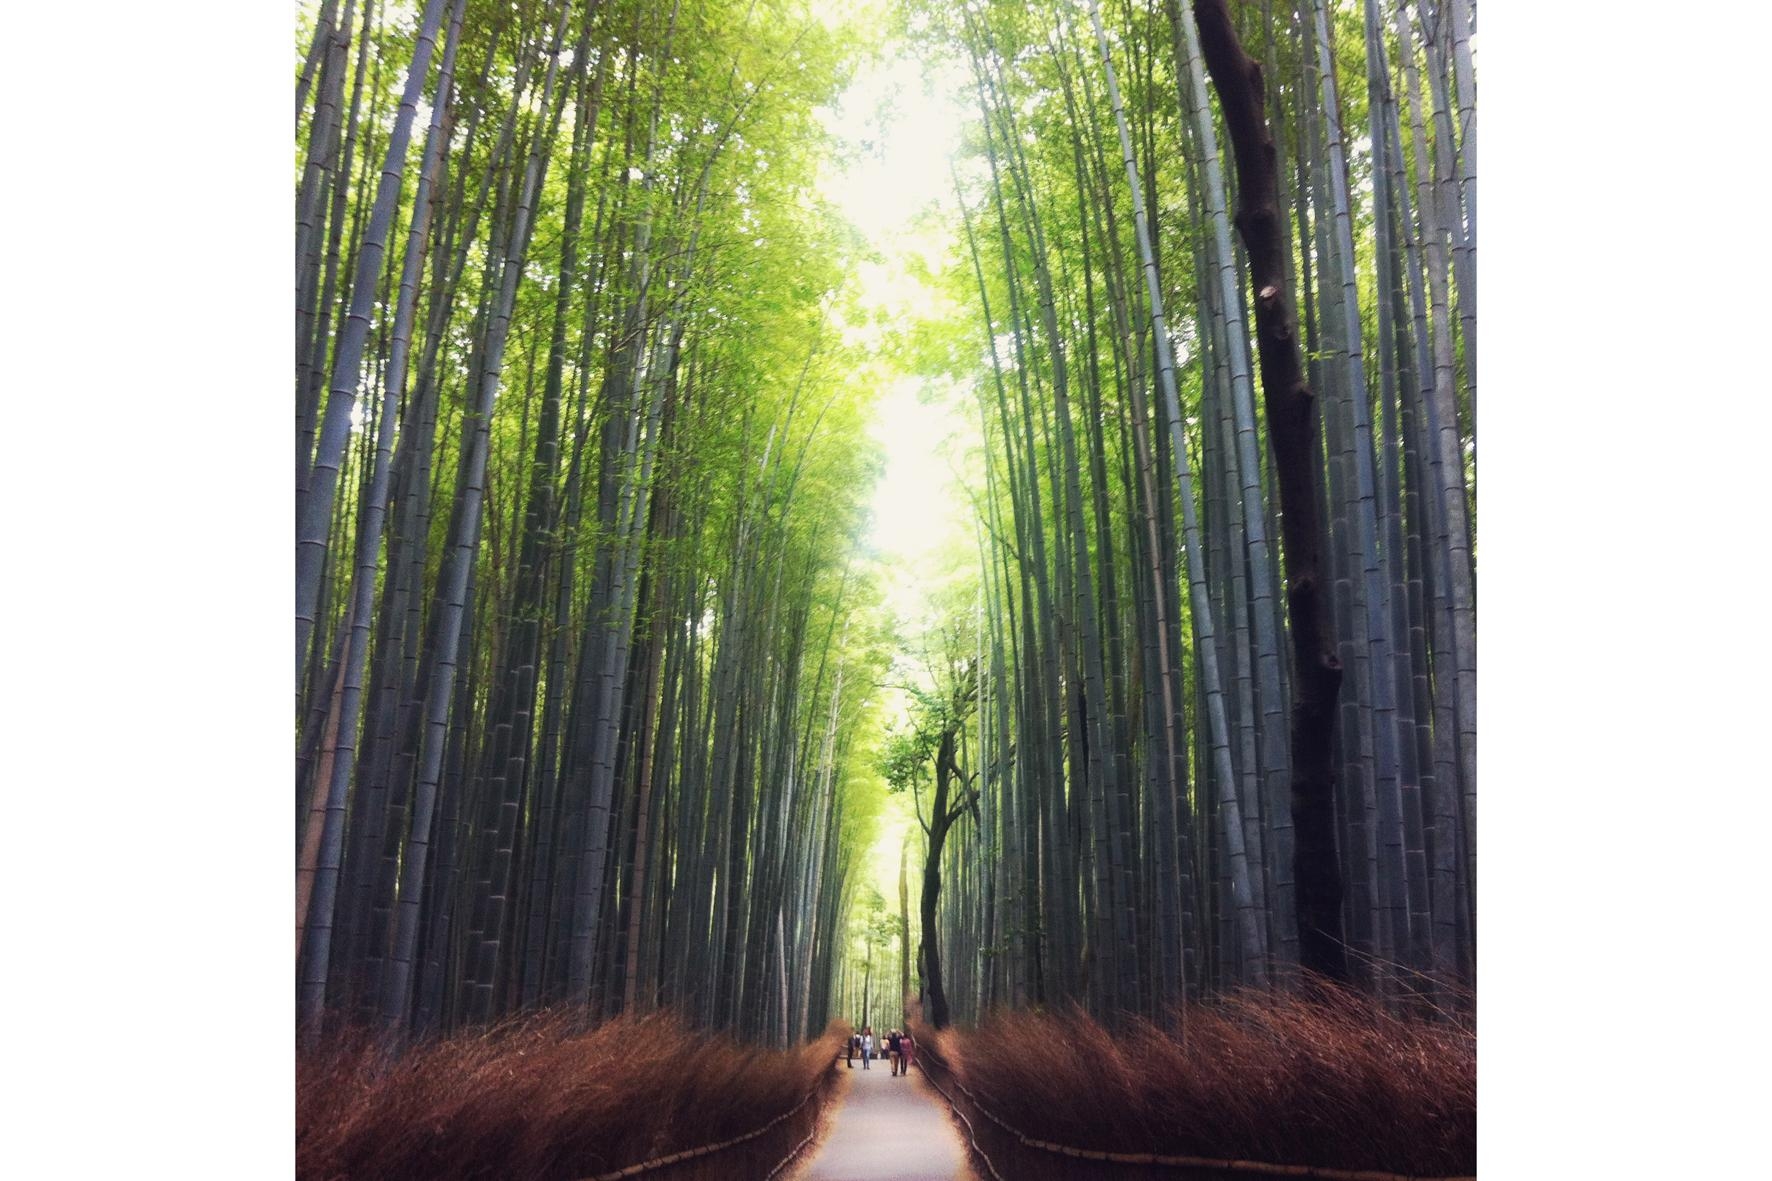 #japan #arashiyama #traveltip Zur richtigen Zeit ist man ganz allein in diesem magischen Bambushain! #breathtaking